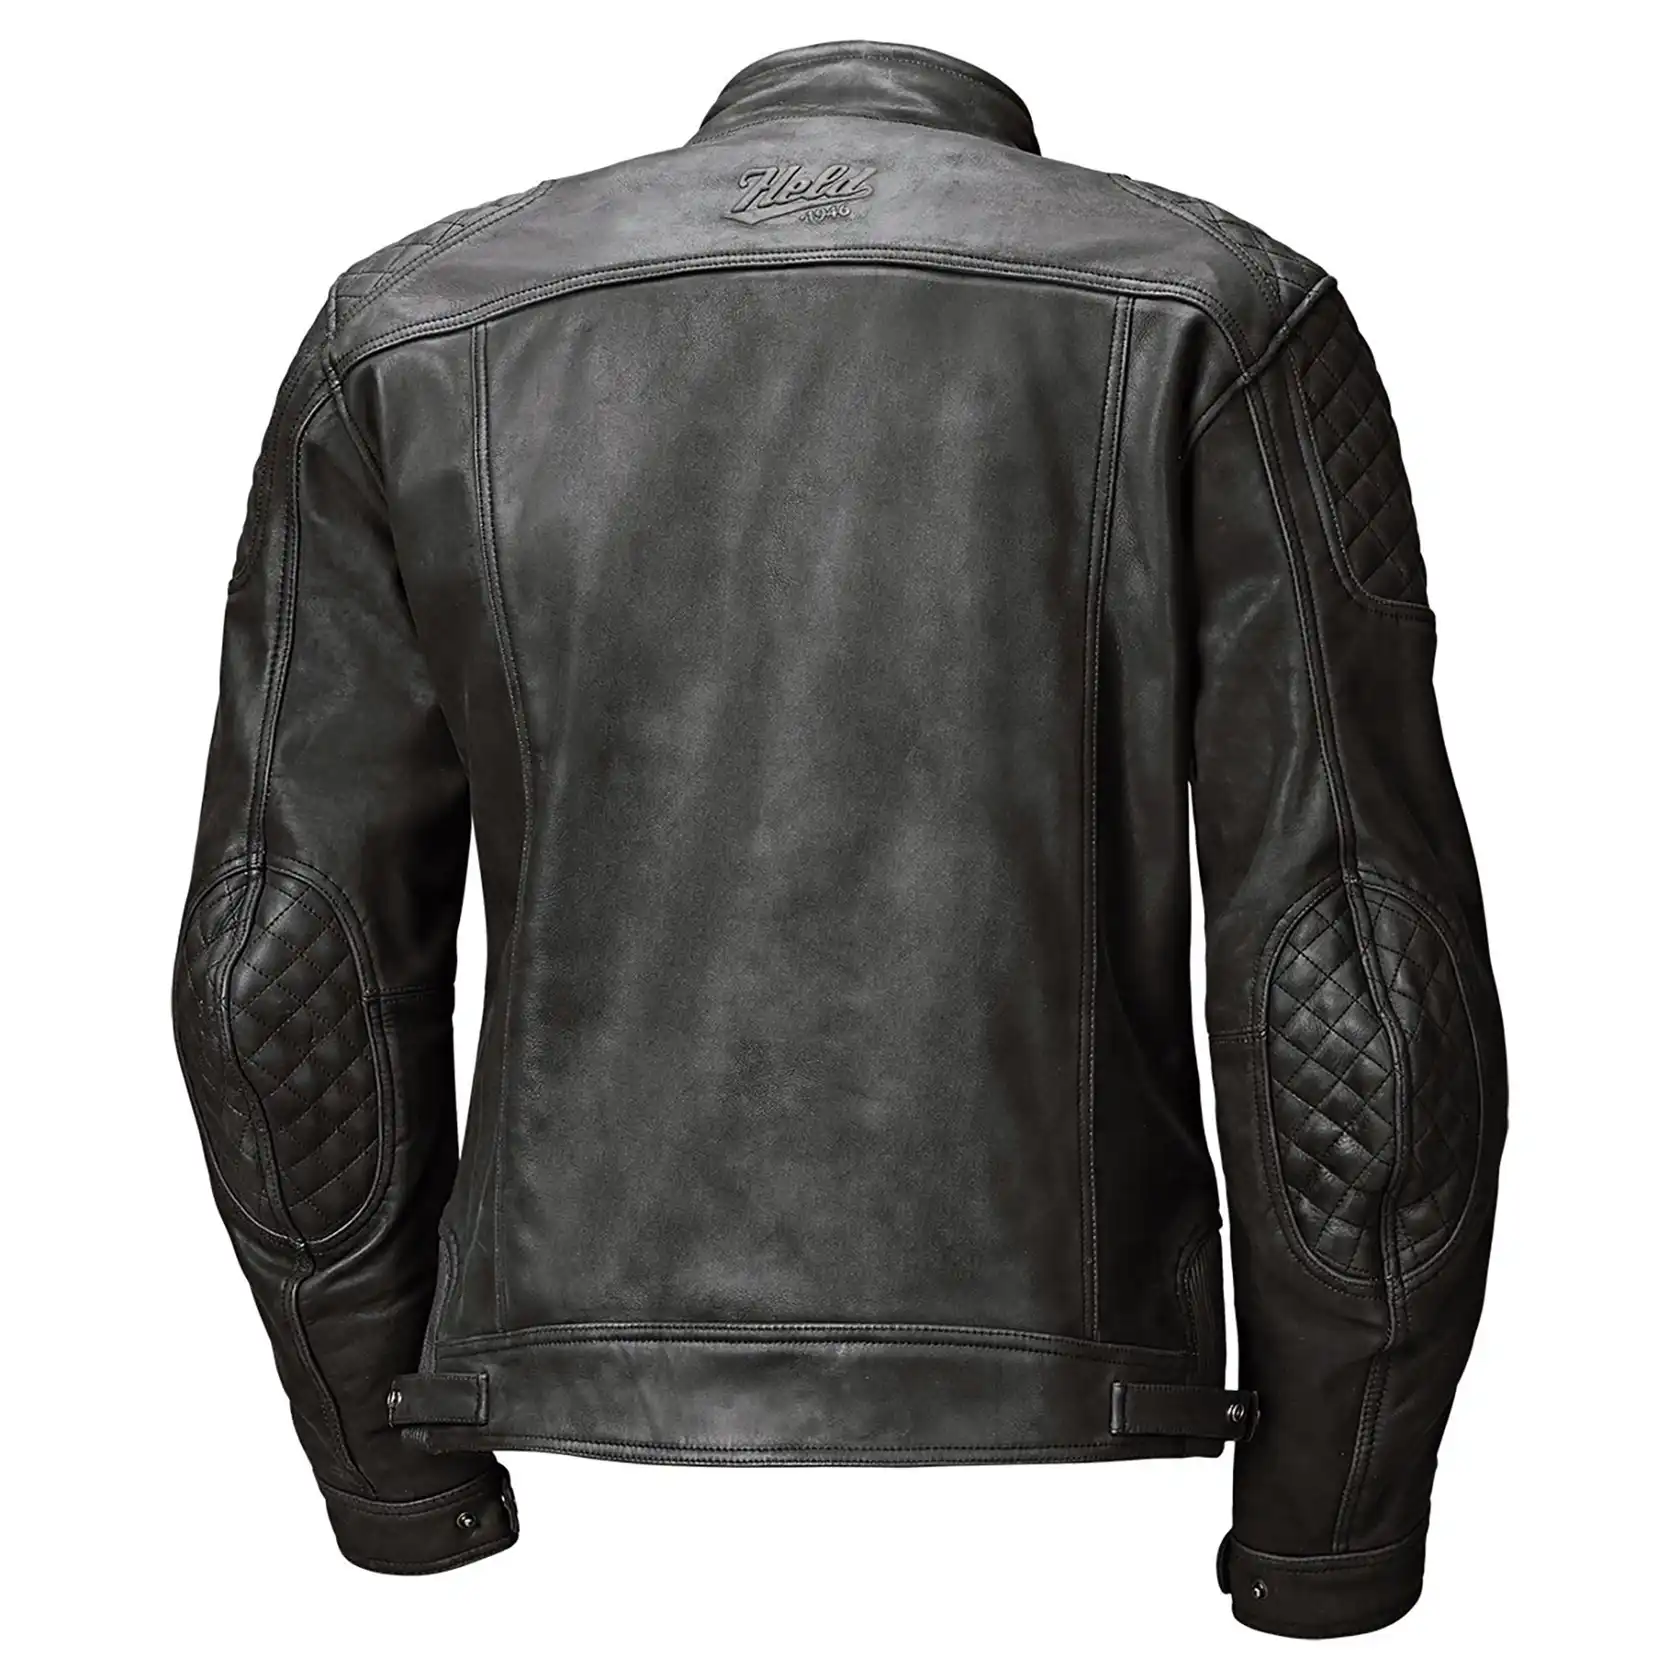 Held Cosmo 3.0 leather jacket